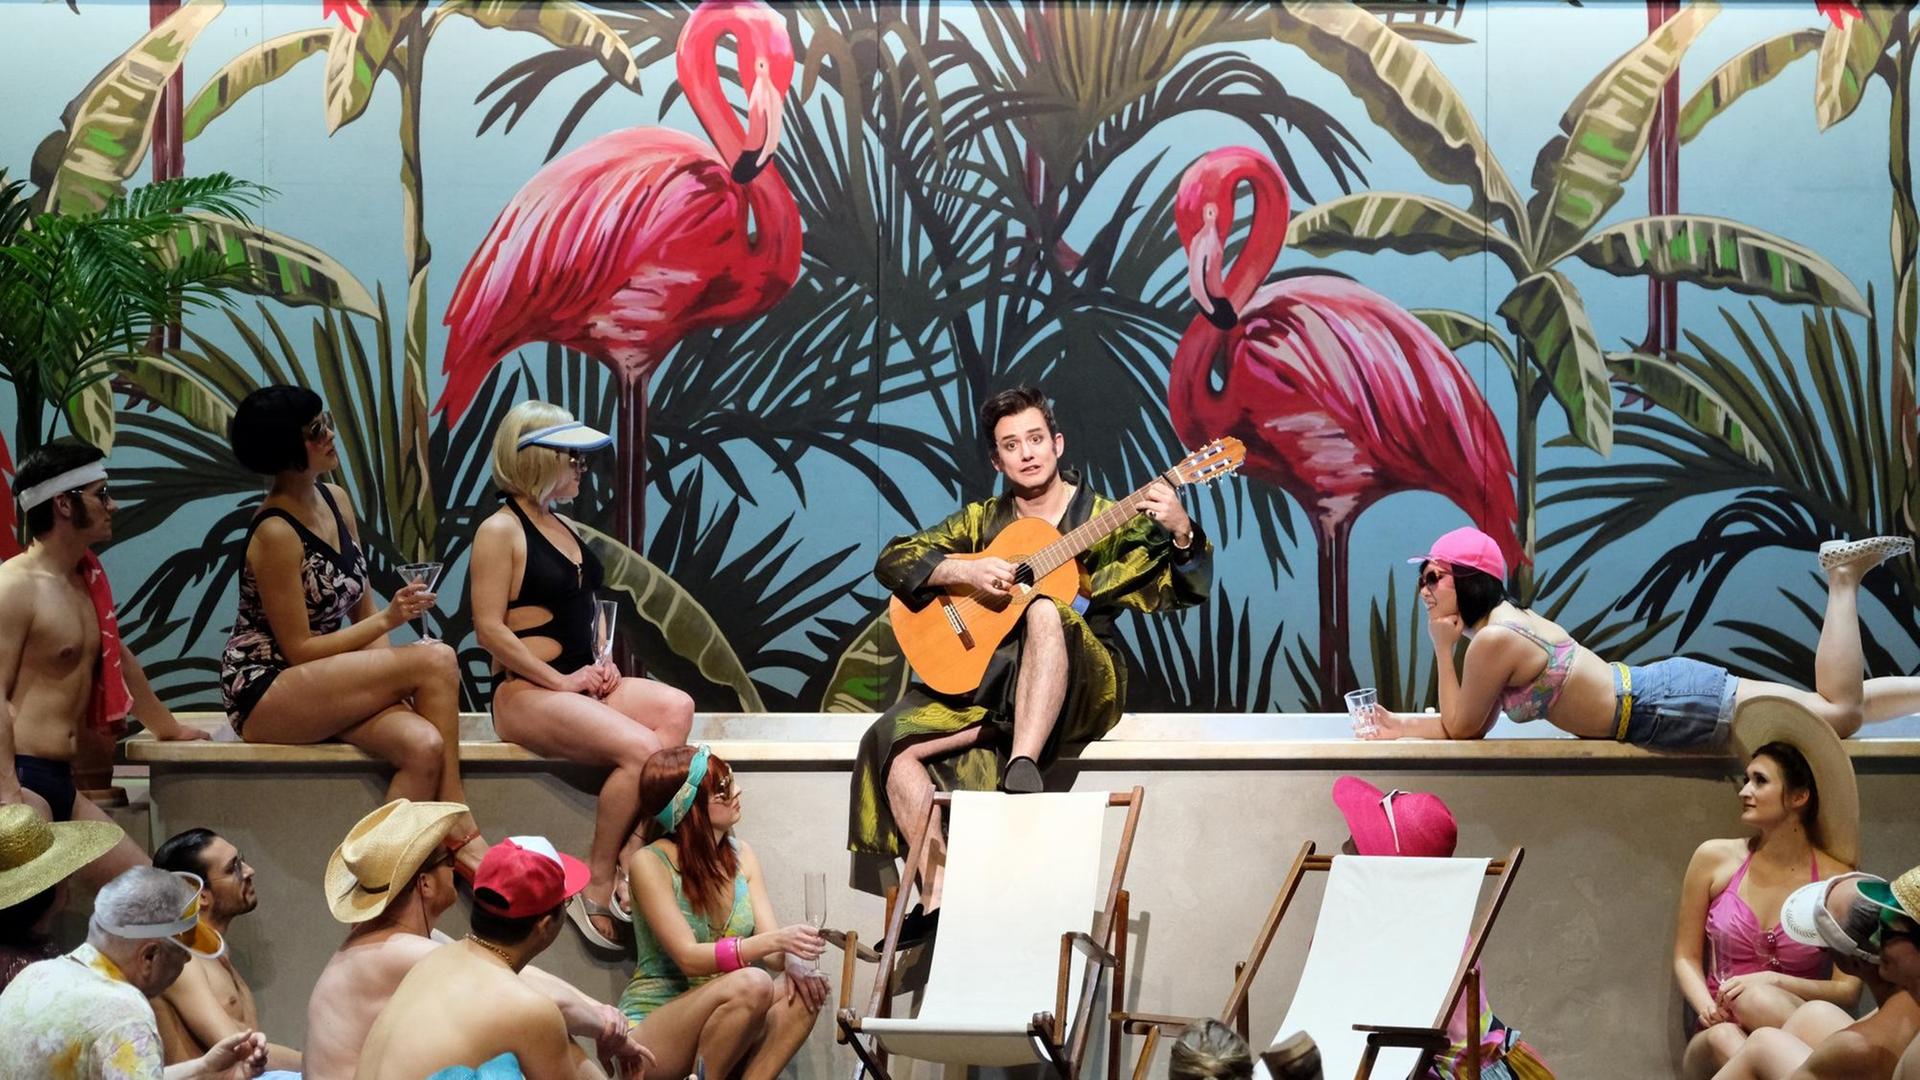 Ein Sänger sitzt mit Gitarre am Rand eines Swimmingpools, umgeben von Männern und Frauen in Badesachen. Hinter ihm sieht man zwei große gemalte Flamingos.